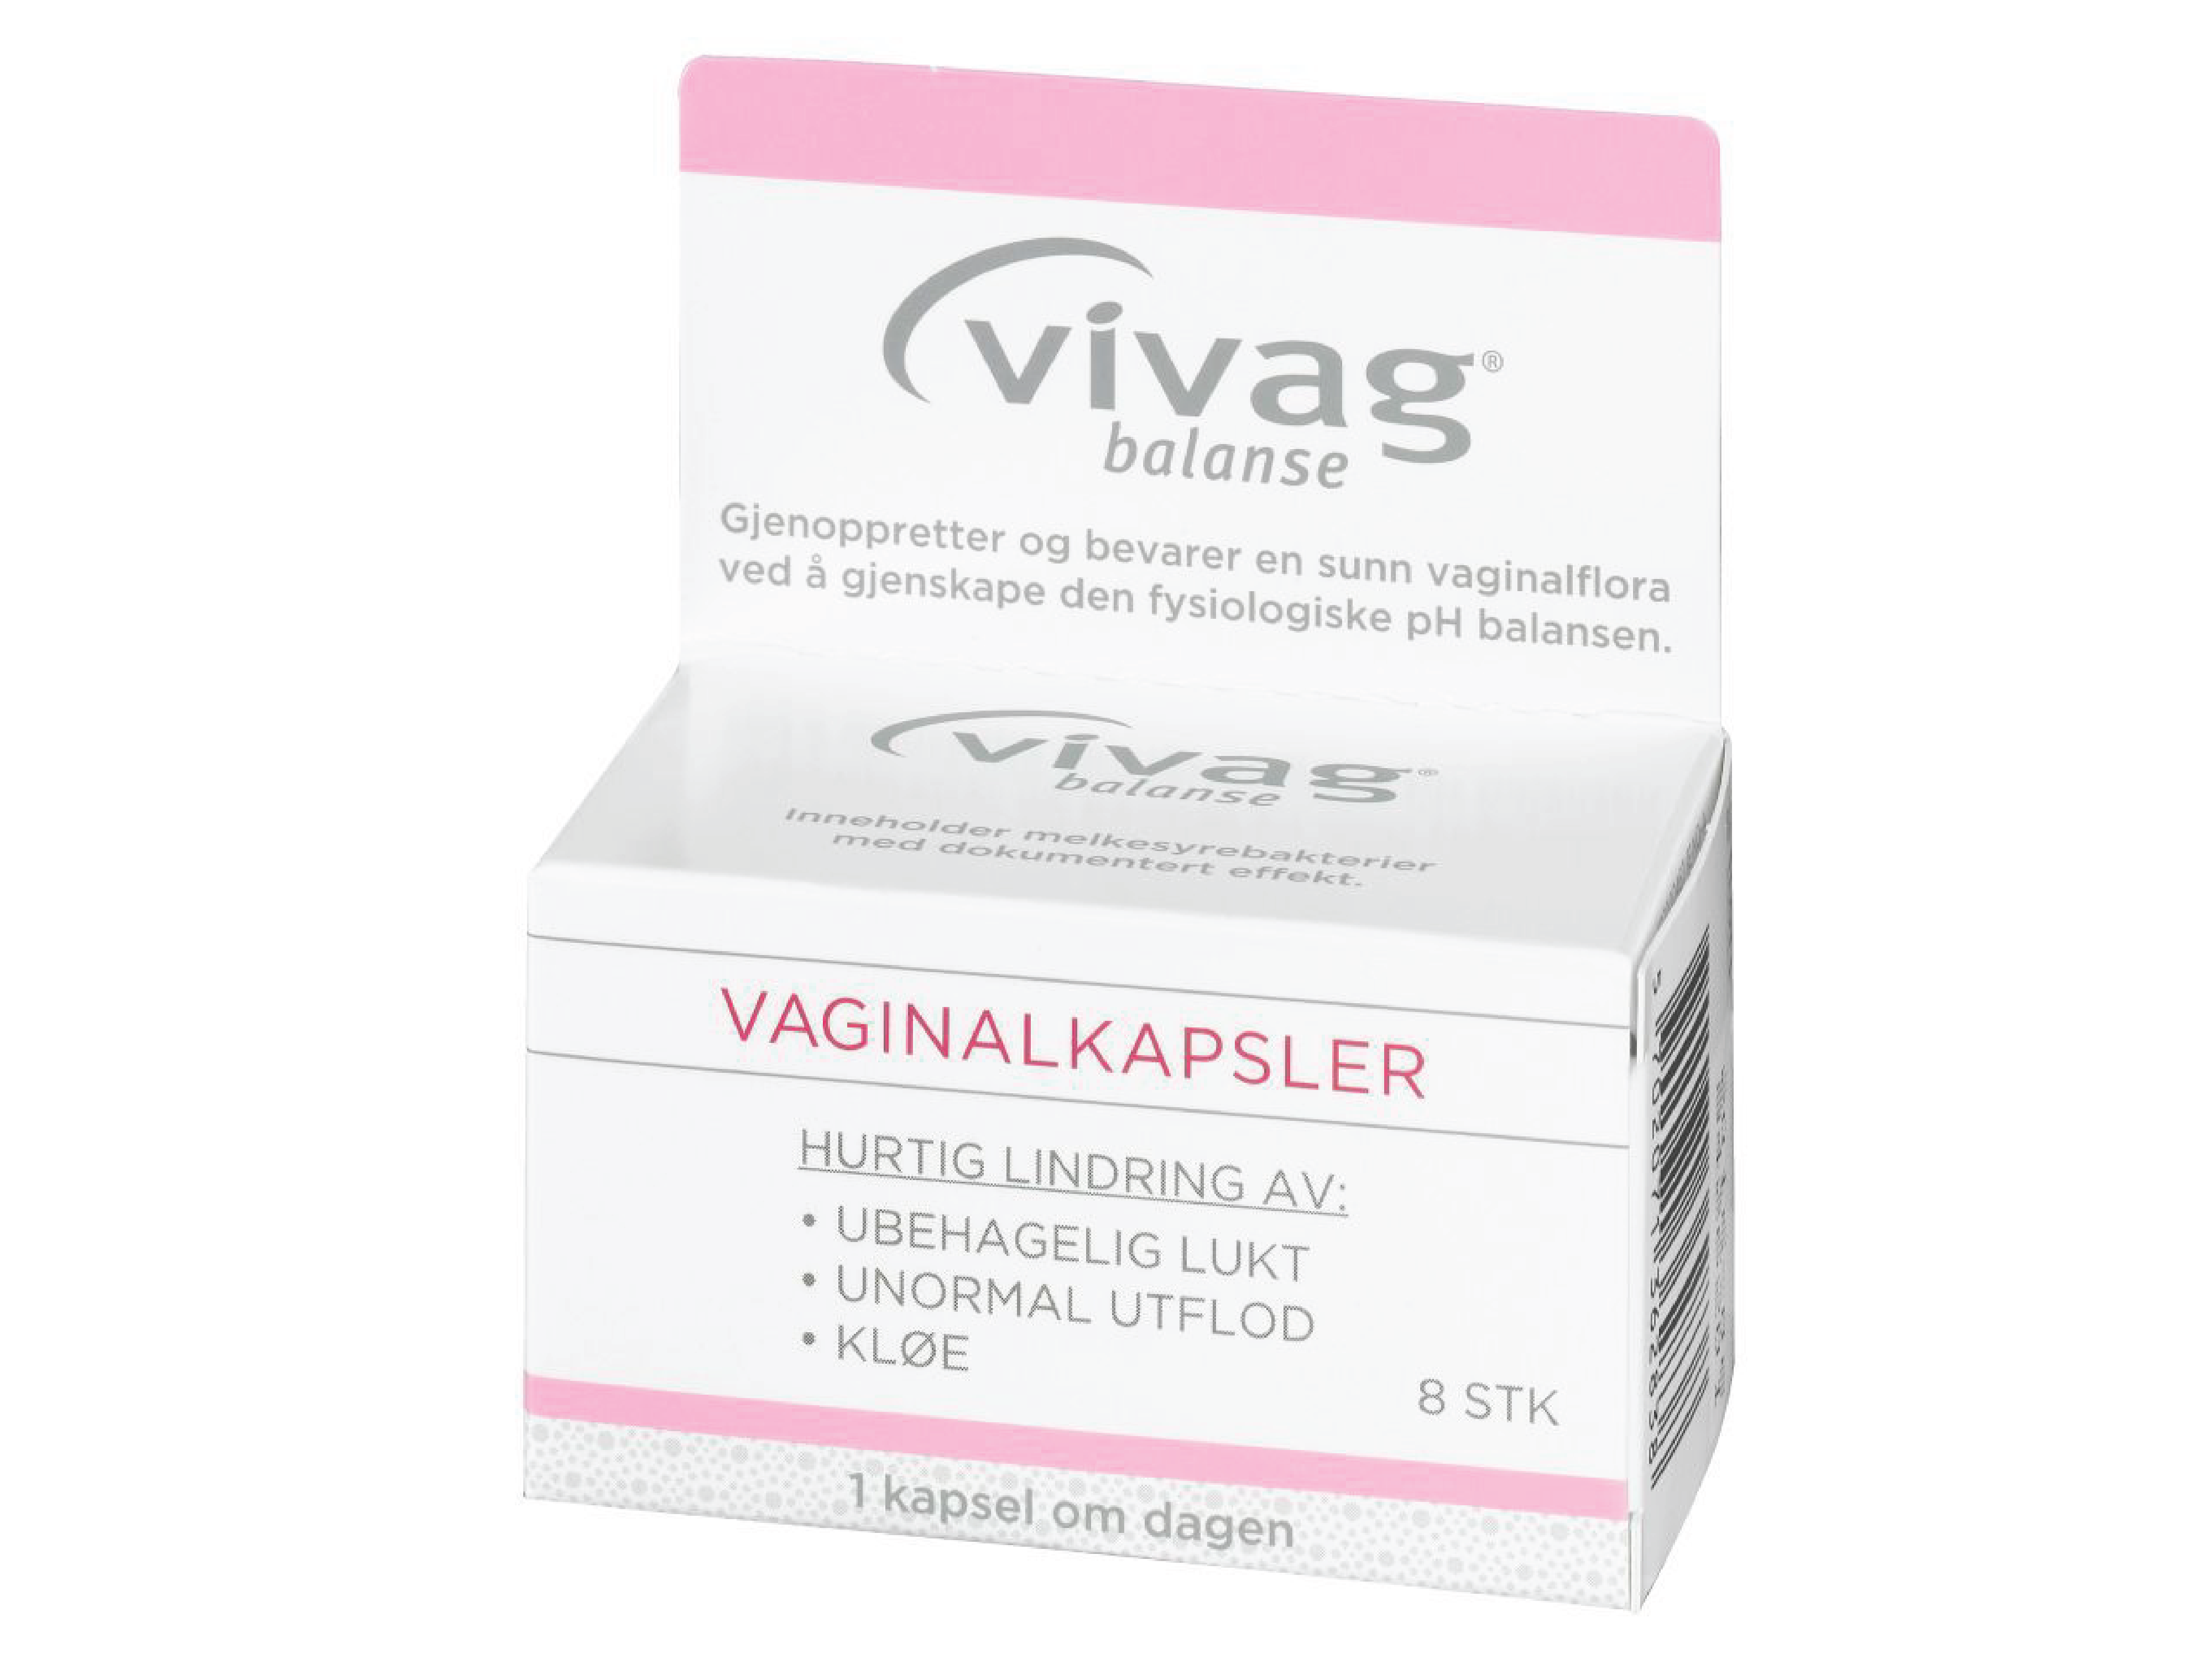 Vivag Pluss Vaginalkapsler, 8 stk.